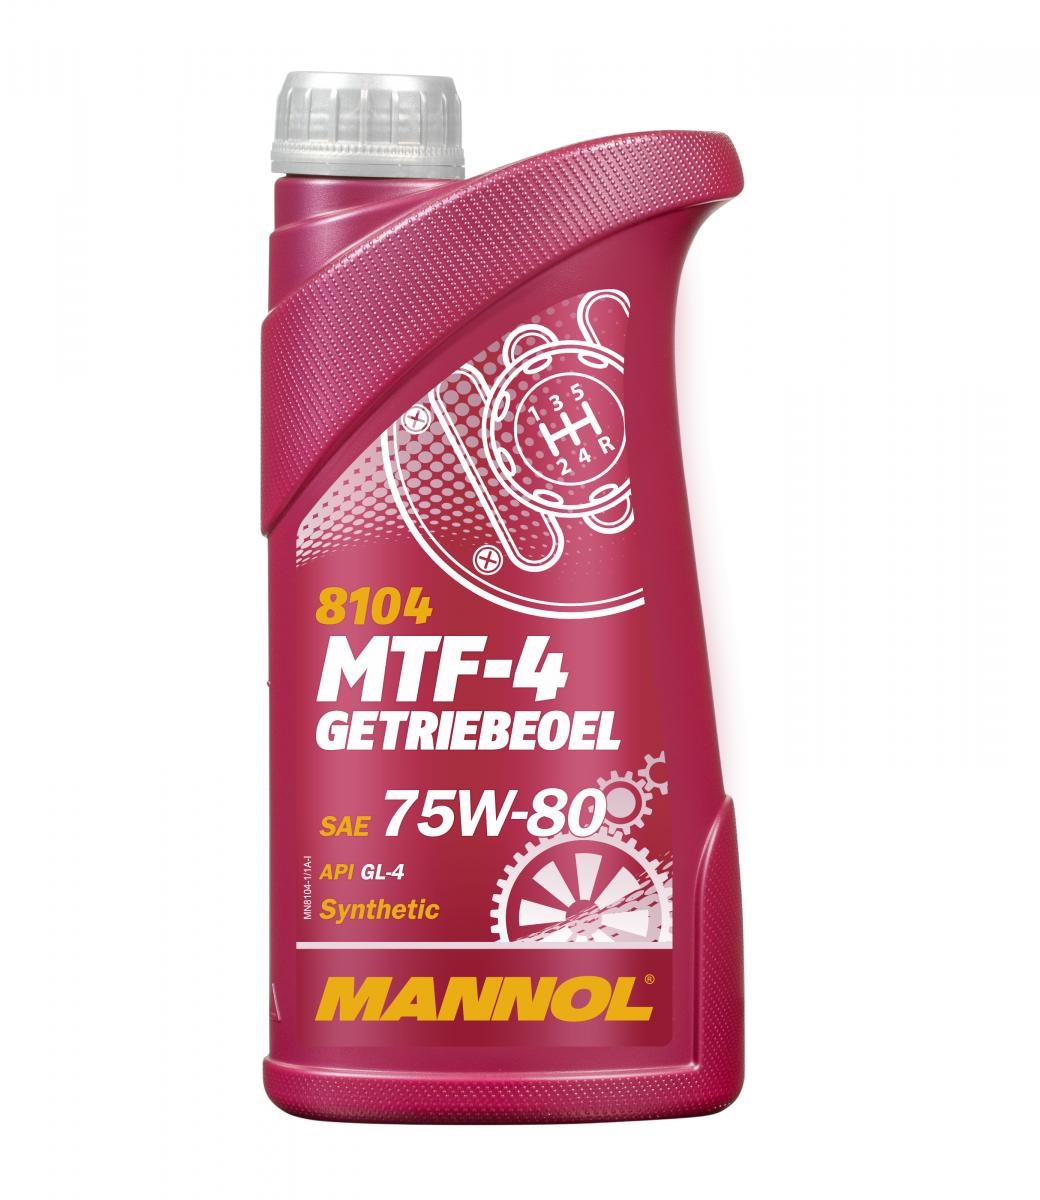 Aceite de transmisión MANNOL MTF-4 Getroebeoel 75W-80, Capacidad: 1L MN8104-1 - Compre en tienda AUTODOC